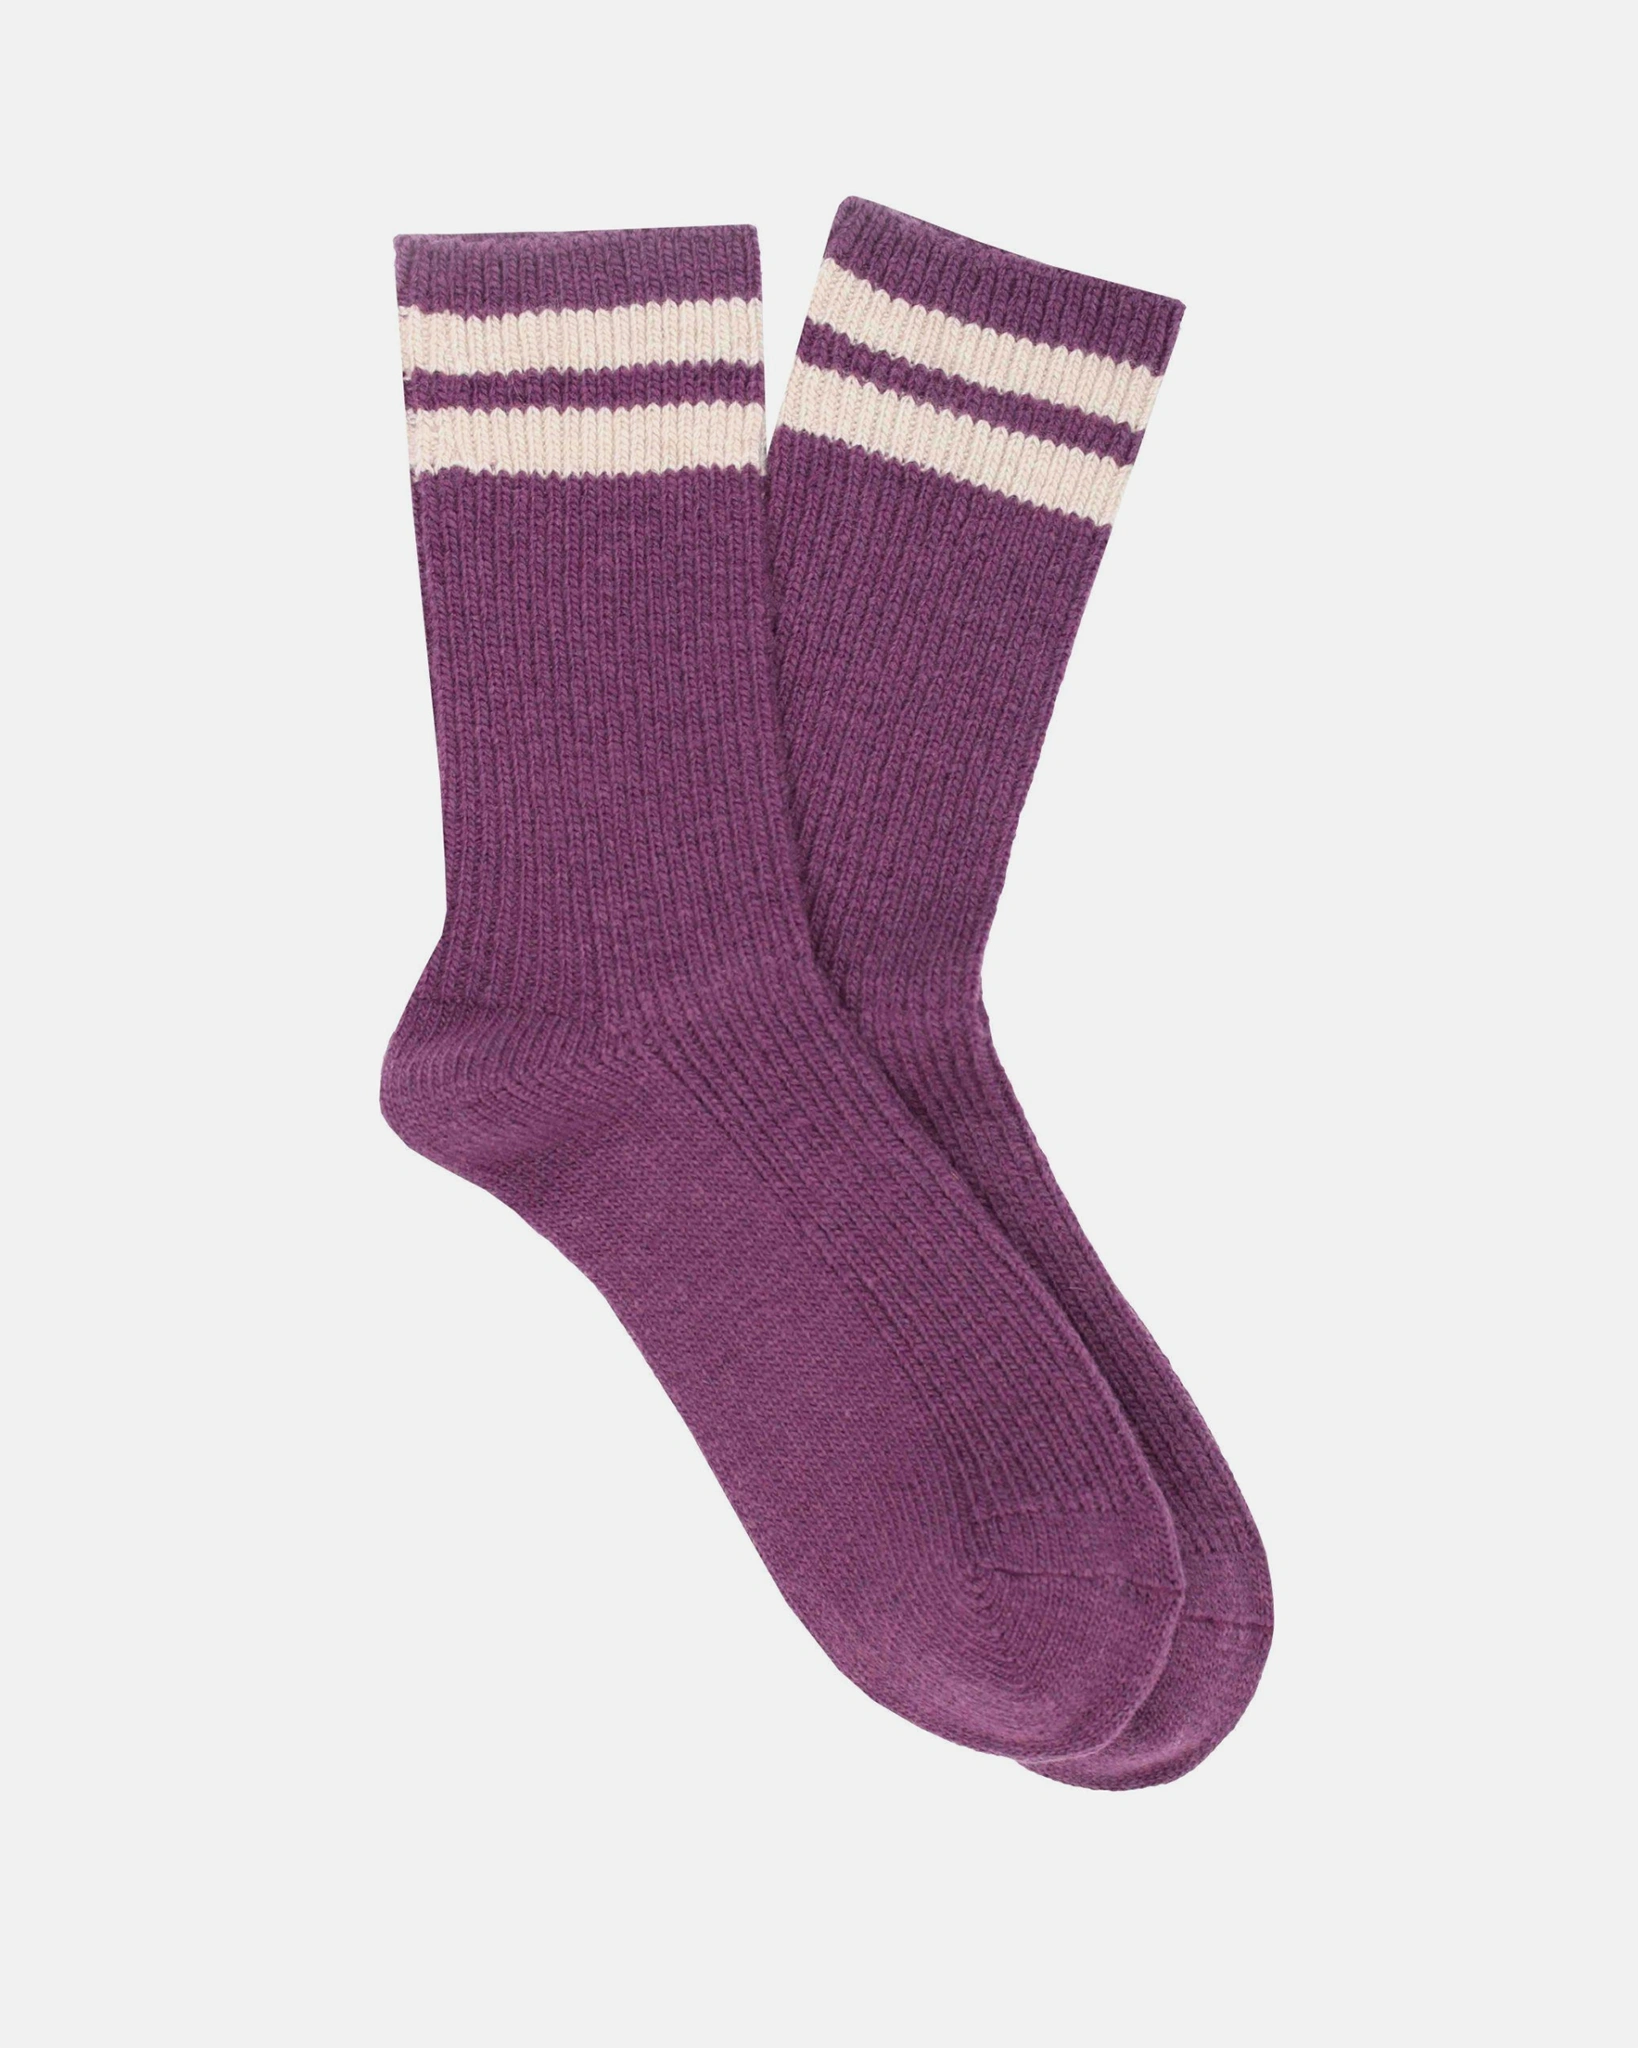 Chaussettes Rayées en cachemire couleur violette et écru 